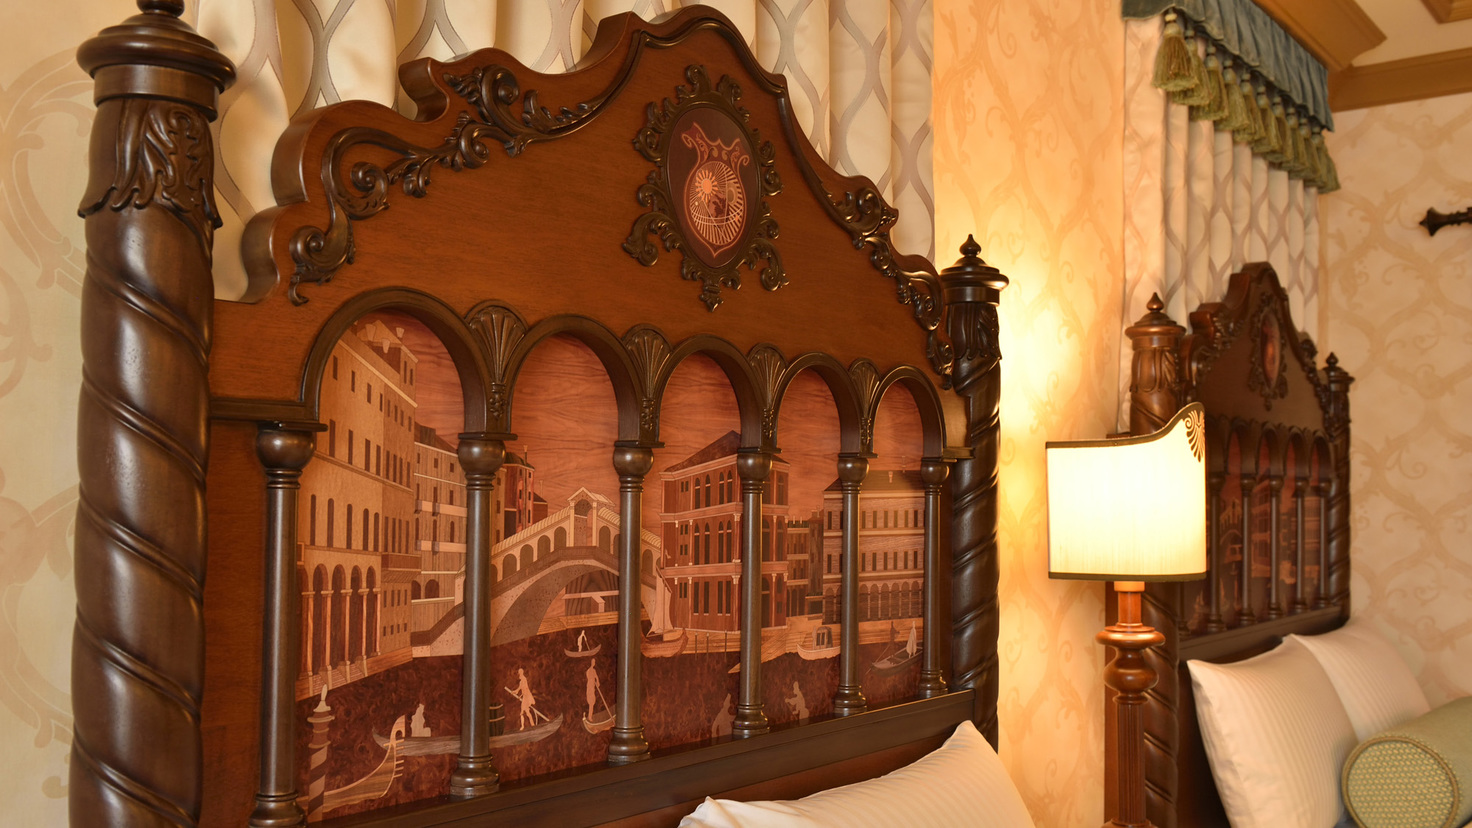 ヴェネツィア・サイドの客室のモチーフ(イメージ)(C)Disney